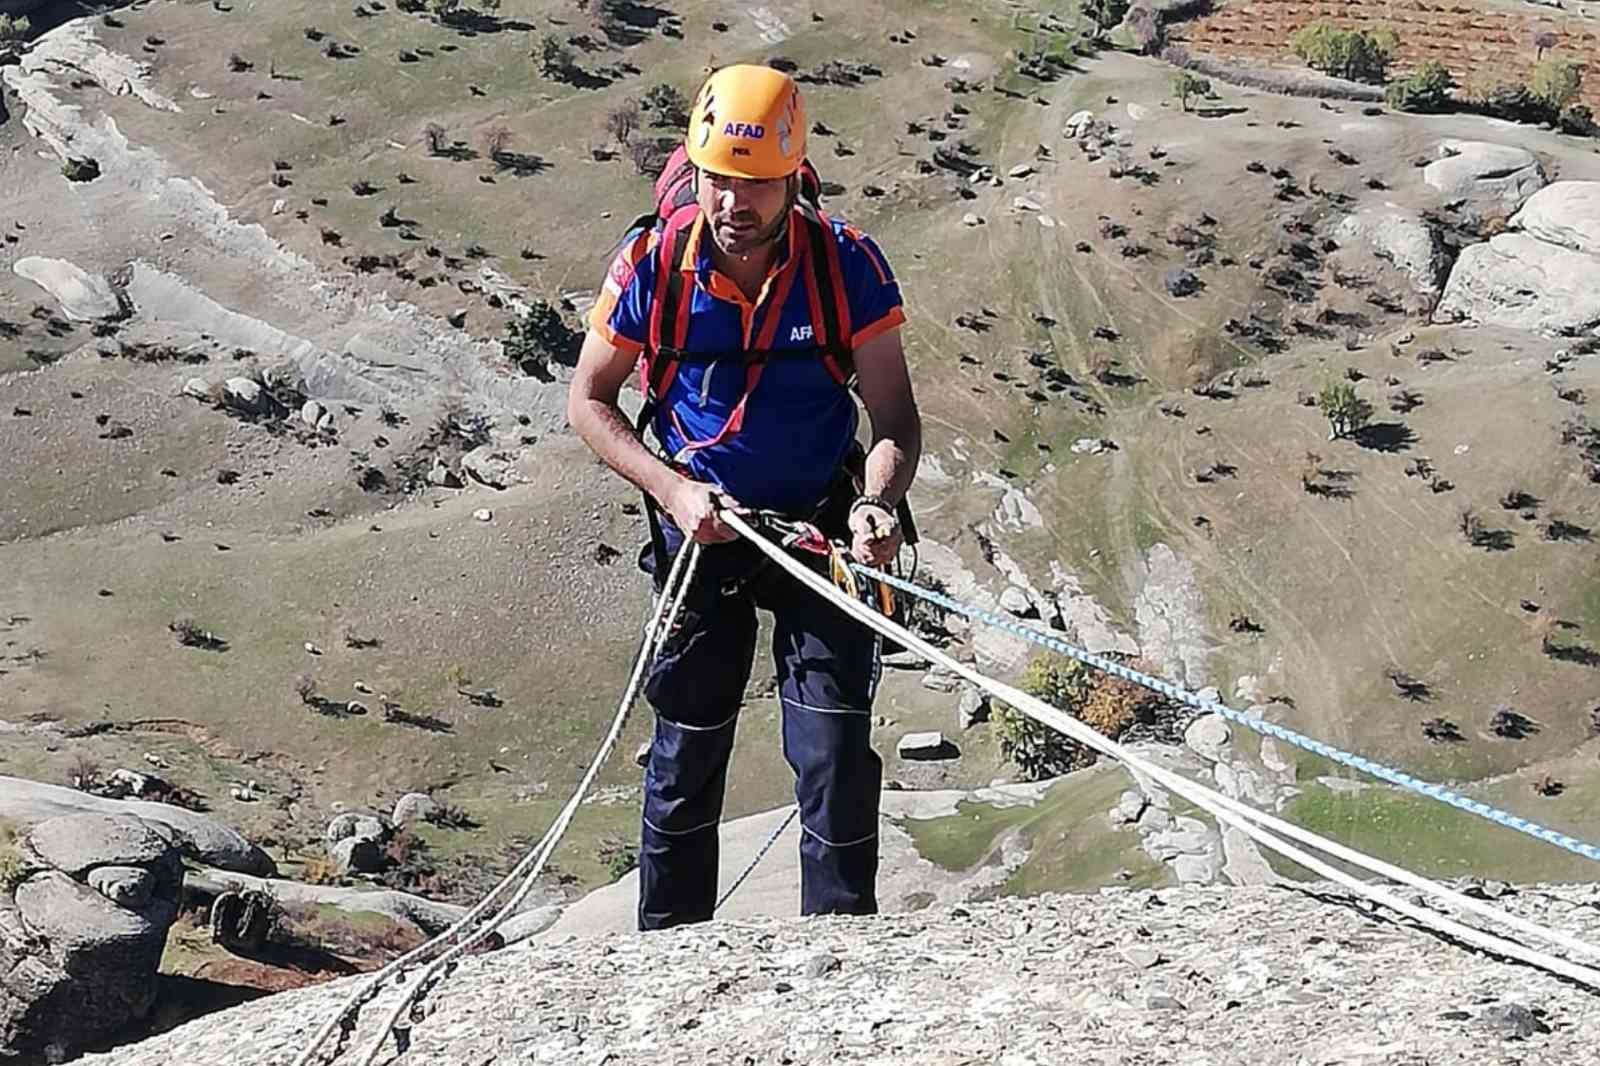 Uçuruma çıkan kayalıklarda 4 saatlik keçi kurtarma operasyonu #diyarbakir